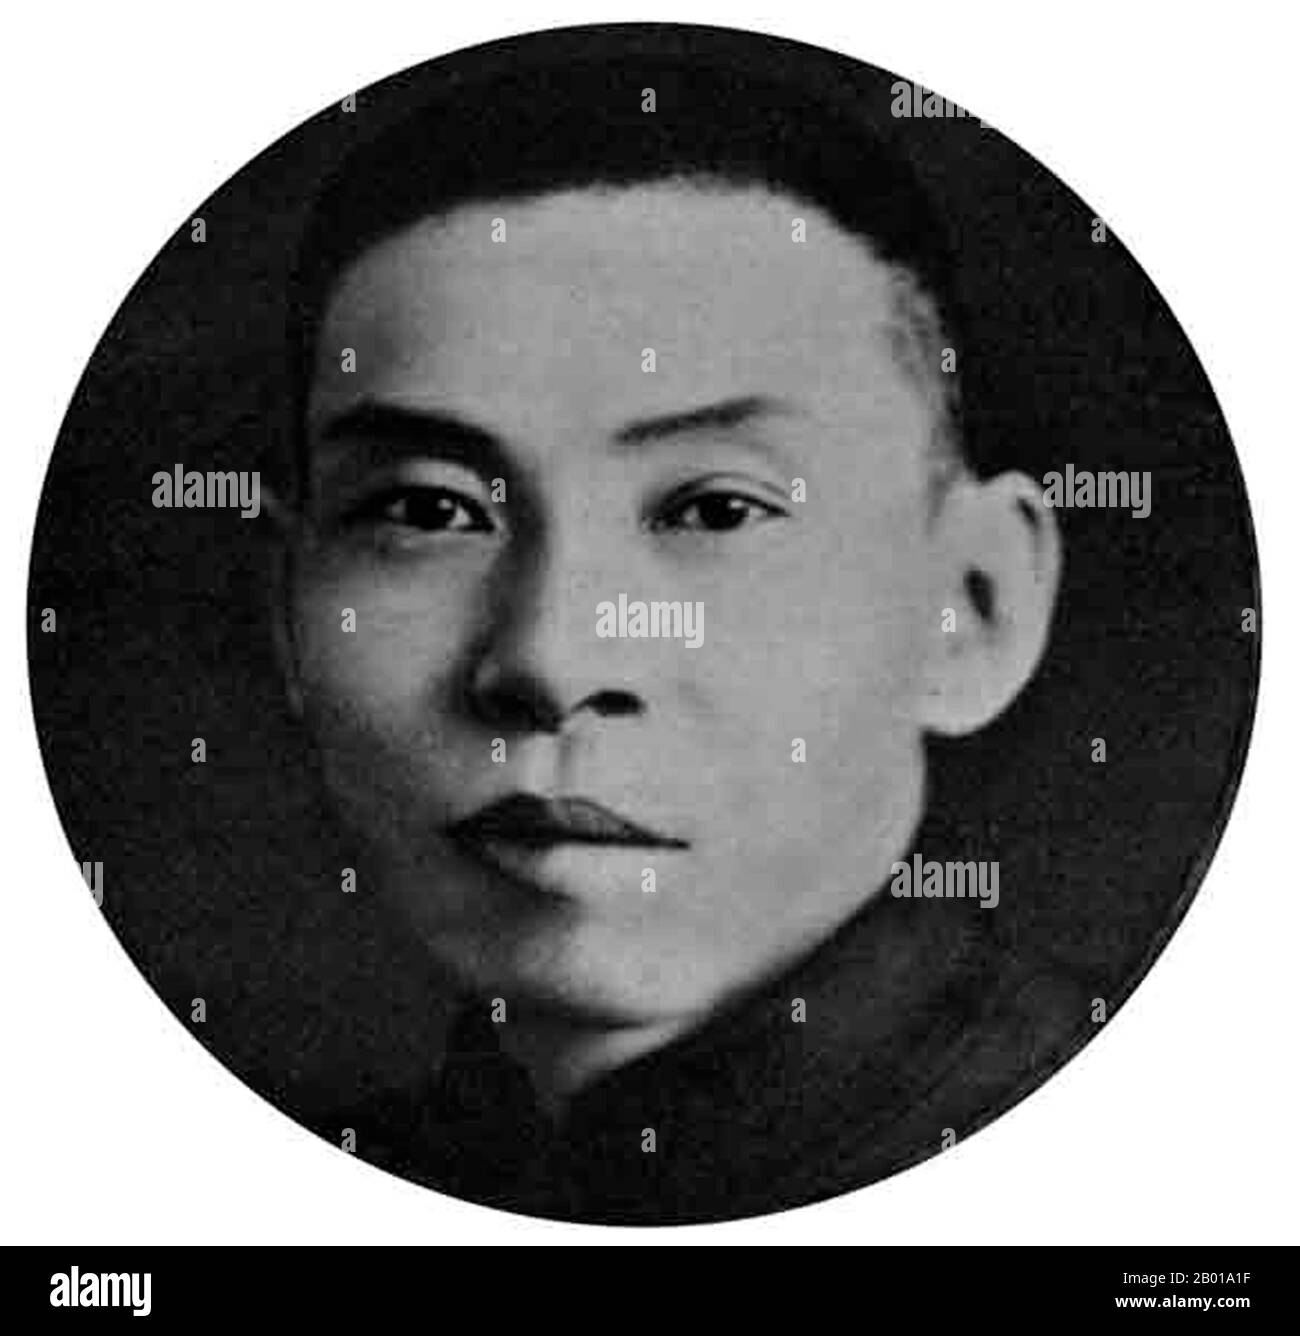 China: Du Yuesheng (22. August 1888 - 16. August 1951), Green Gang Mobster und Shanghai Pate, c.. 1940s. Du Yuesheng (TU Yüeh-sheng), allgemein bekannt als „Big-Ears Du“, war ein chinesischer Gangster, der einen Großteil seines Lebens in Shanghai verbrachte. Er war ein wichtiger Unterstützer der Kuomintang (KMT; aka Nationalisten) und Chiang Kai-shek in ihrem Kampf gegen die Kommunisten während der 1920s, und war eine Figur von gewisser Bedeutung während des Zweiten Chinesisch-Japanischen Krieges. Nach dem chinesischen Bürgerkrieg und dem Rückzug der KMT nach Taiwan ging Du ins Exil nach Hongkong und blieb dort bis zu seinem Tod im Jahr 1951. Stockfoto